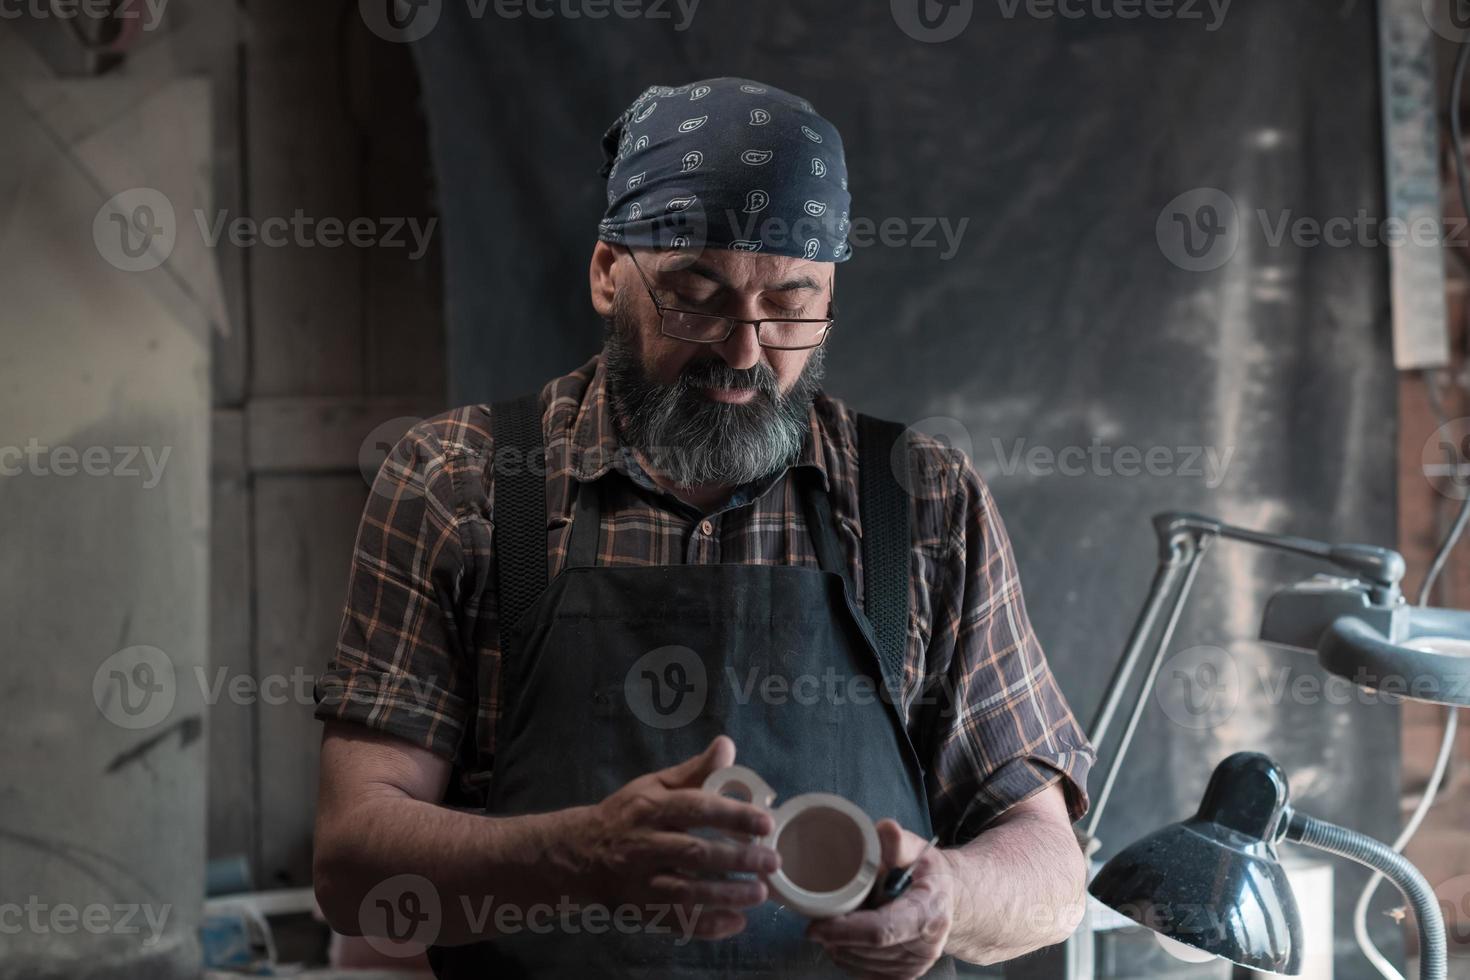 maestro de cucharas en su taller con productos y herramientas de madera foto